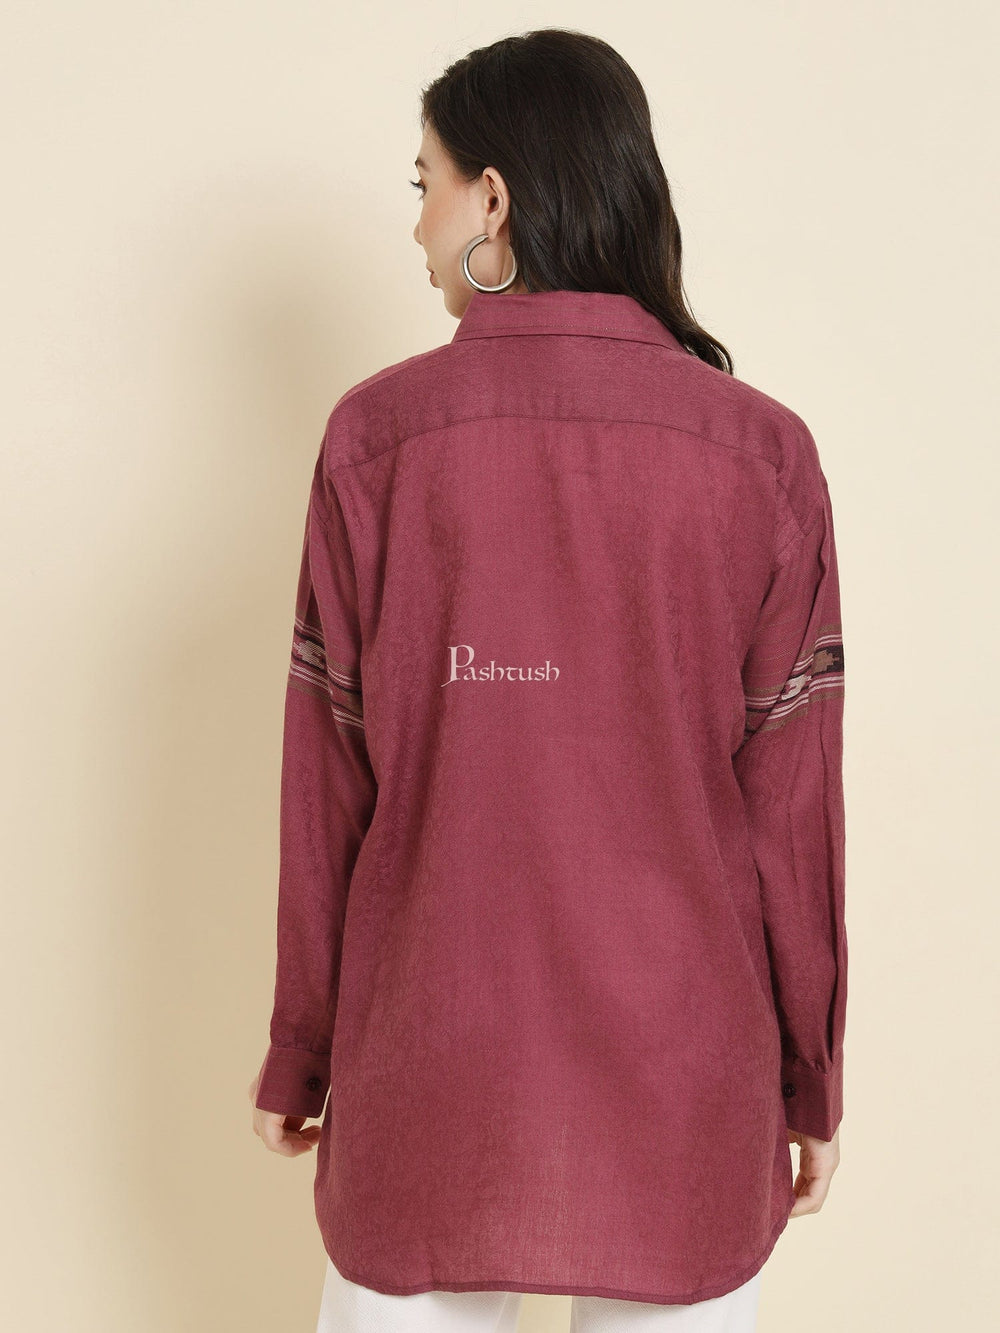 Pashtush India Womens Shirt Pashtush Womens Oversized Casual Woollen Shirt, Burgundy